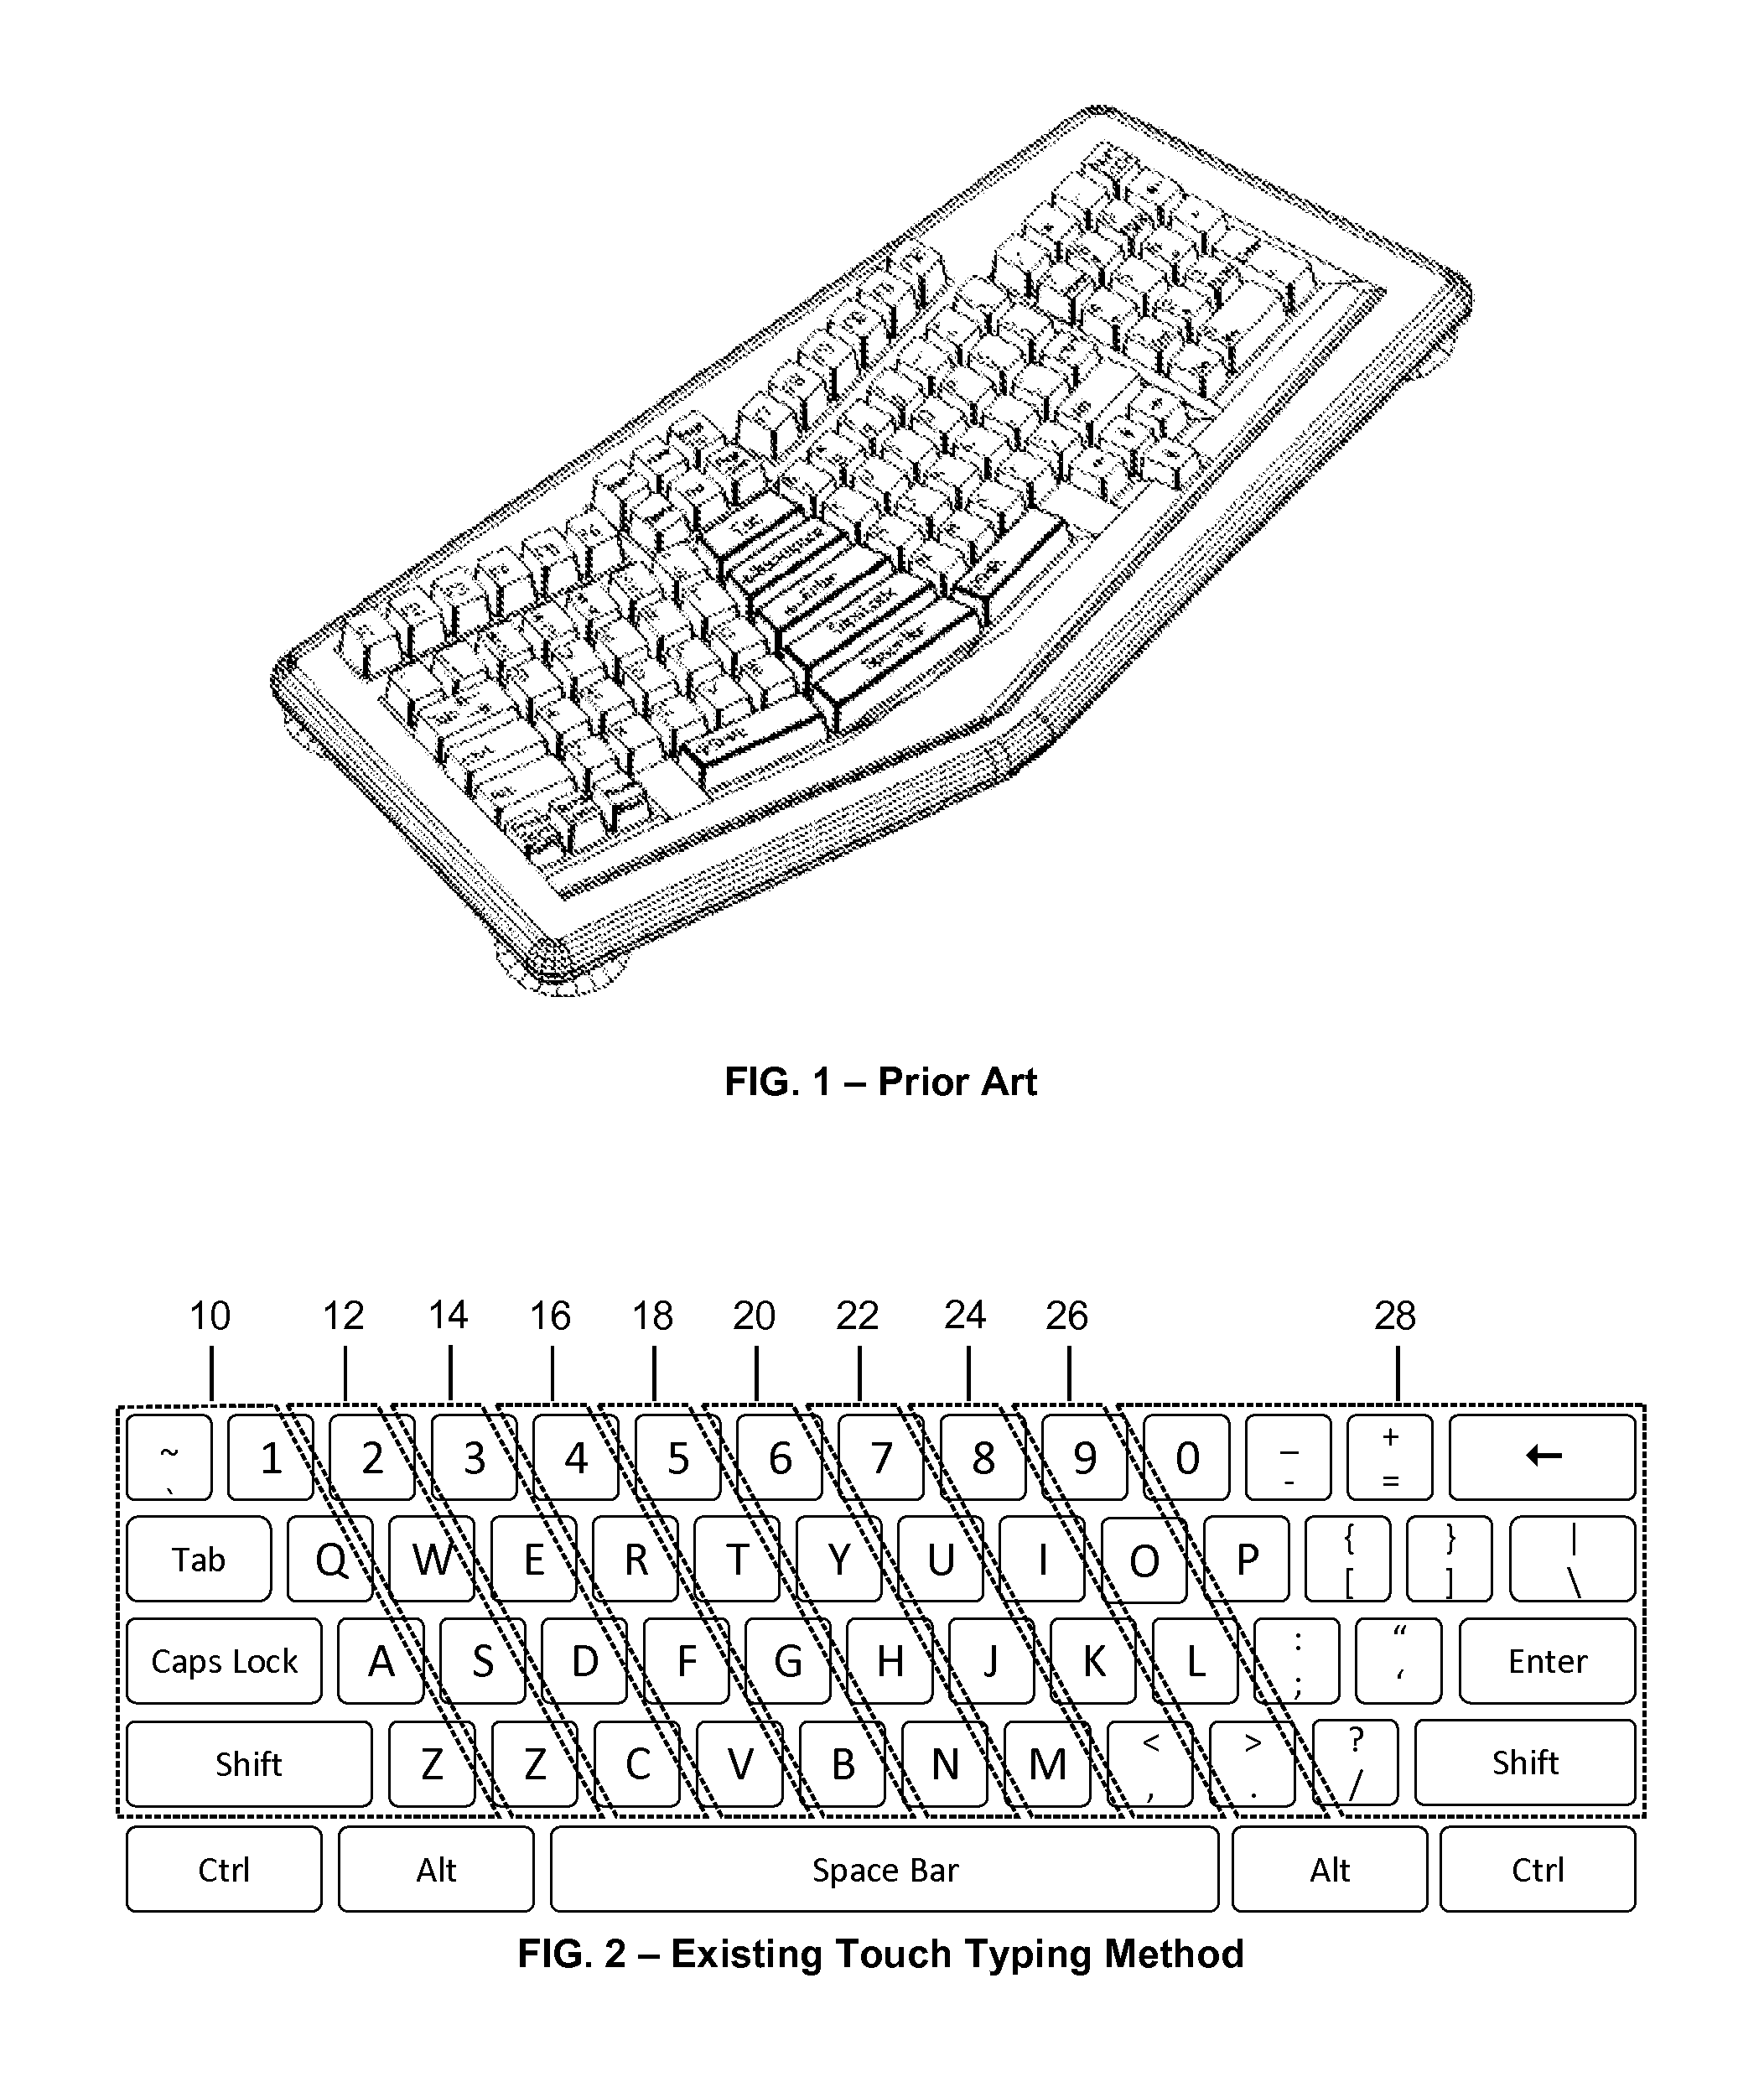 Qwert ergonomic keyboard apparatus